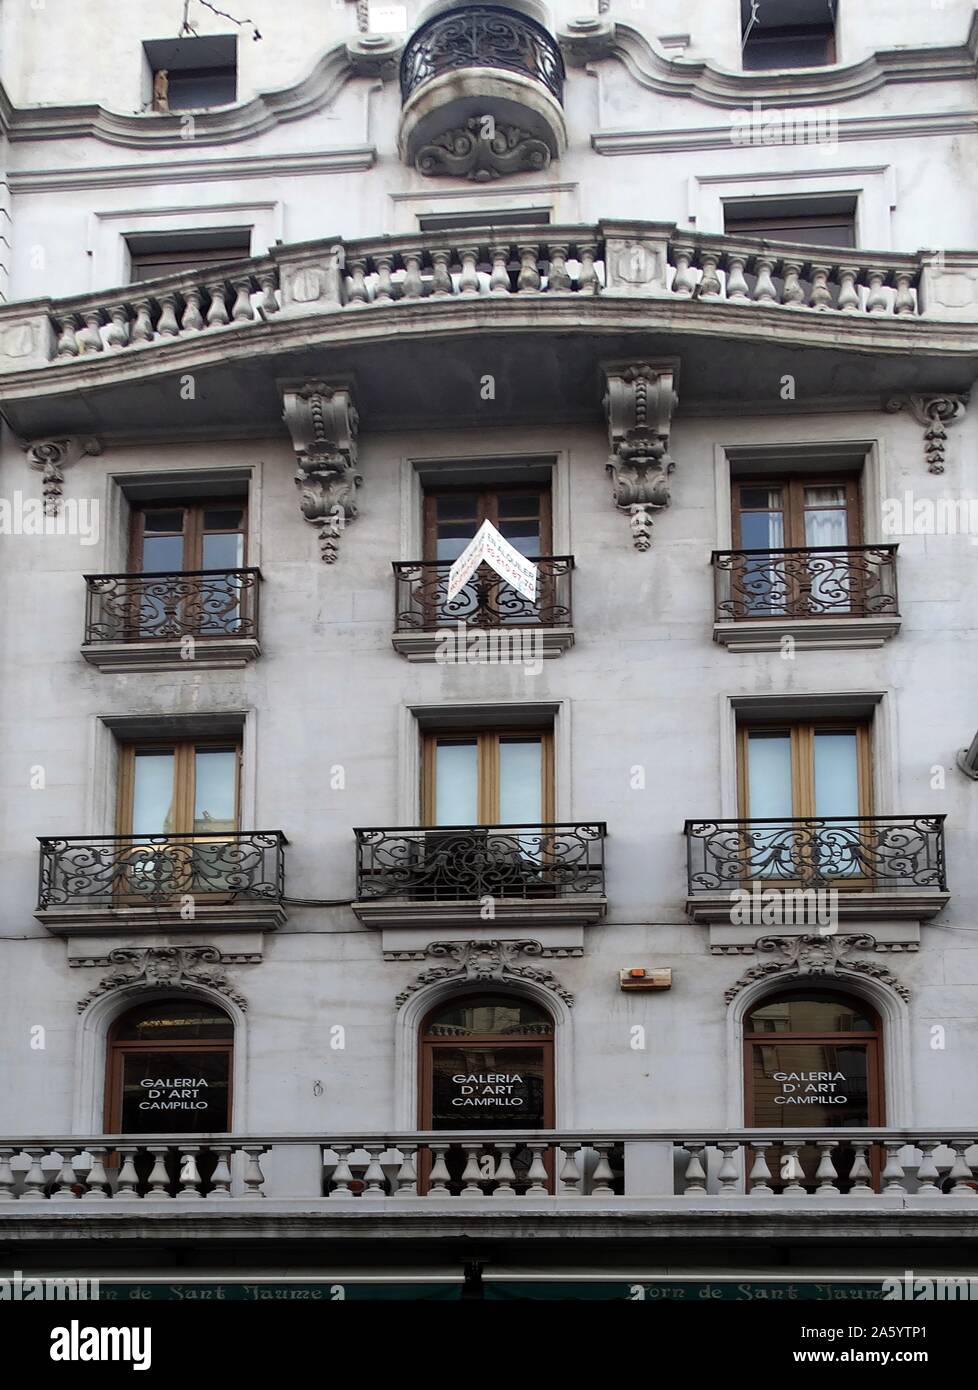 Fassade des Appartements aus dem frühen zwanzigsten Jahrhundert, Barcelona, Spanien Stockfoto